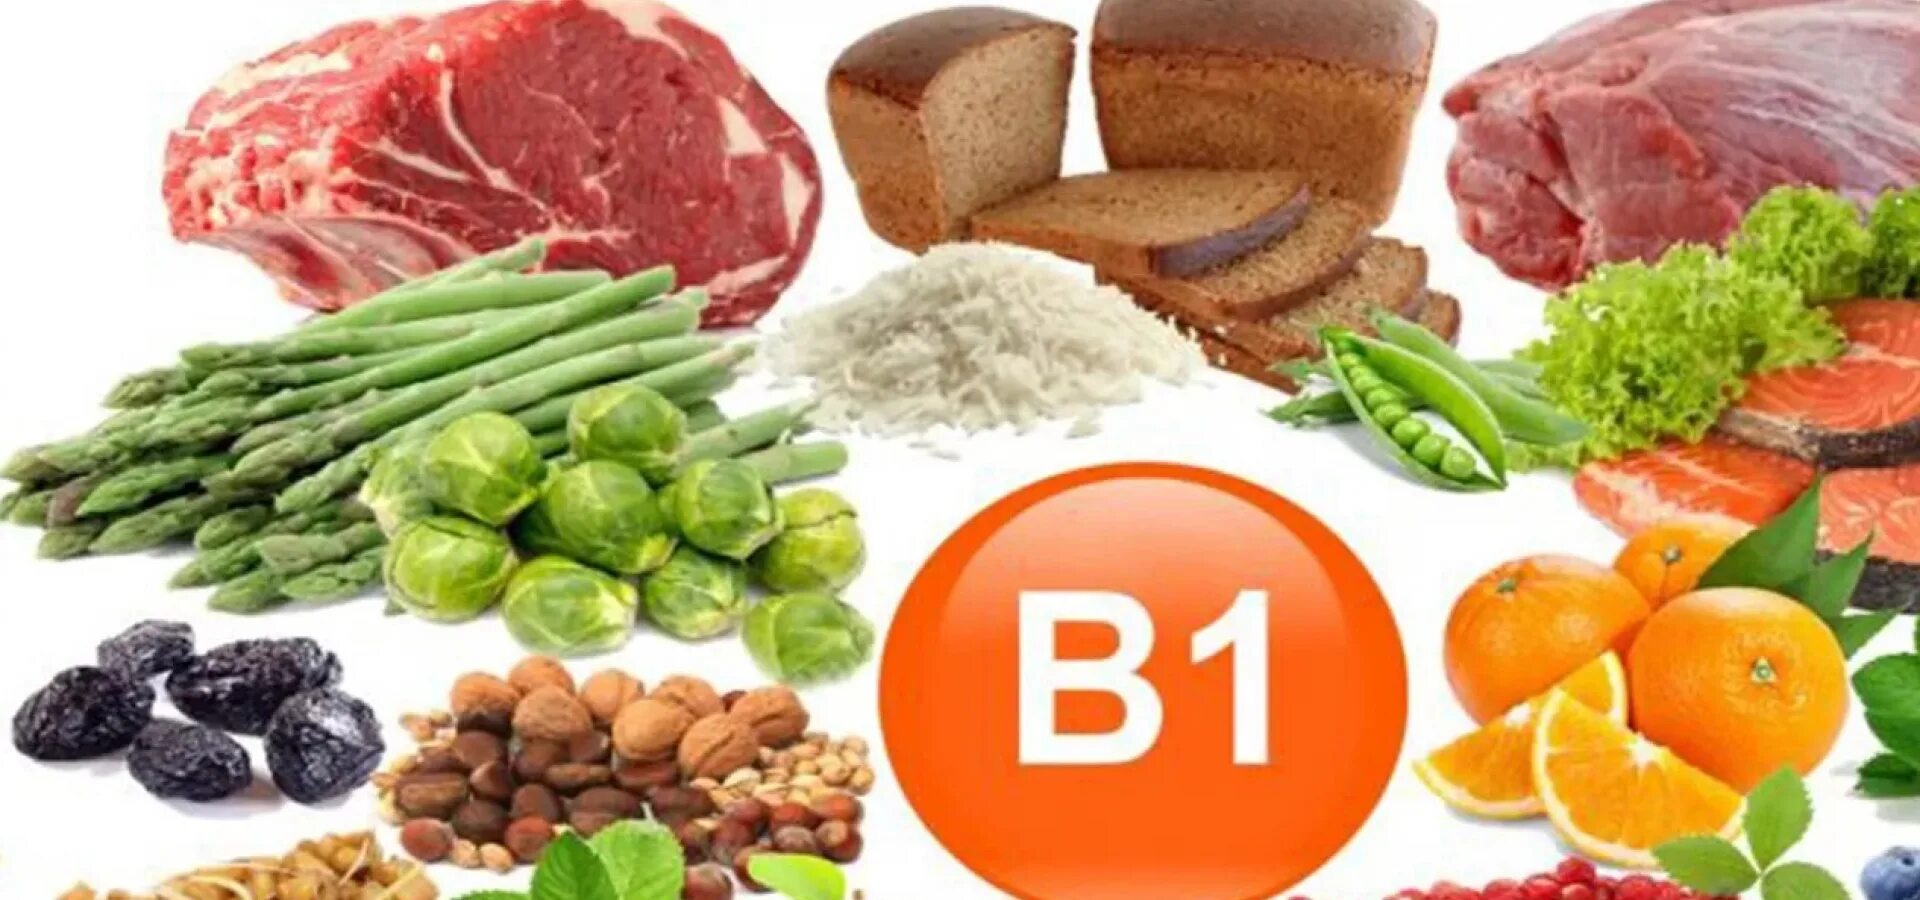 B6 b4 b9. Витамин б1 тиамин. Витамин b1 тиамин. Тиамин витамин в1. Витамин b1 тиамин источники.